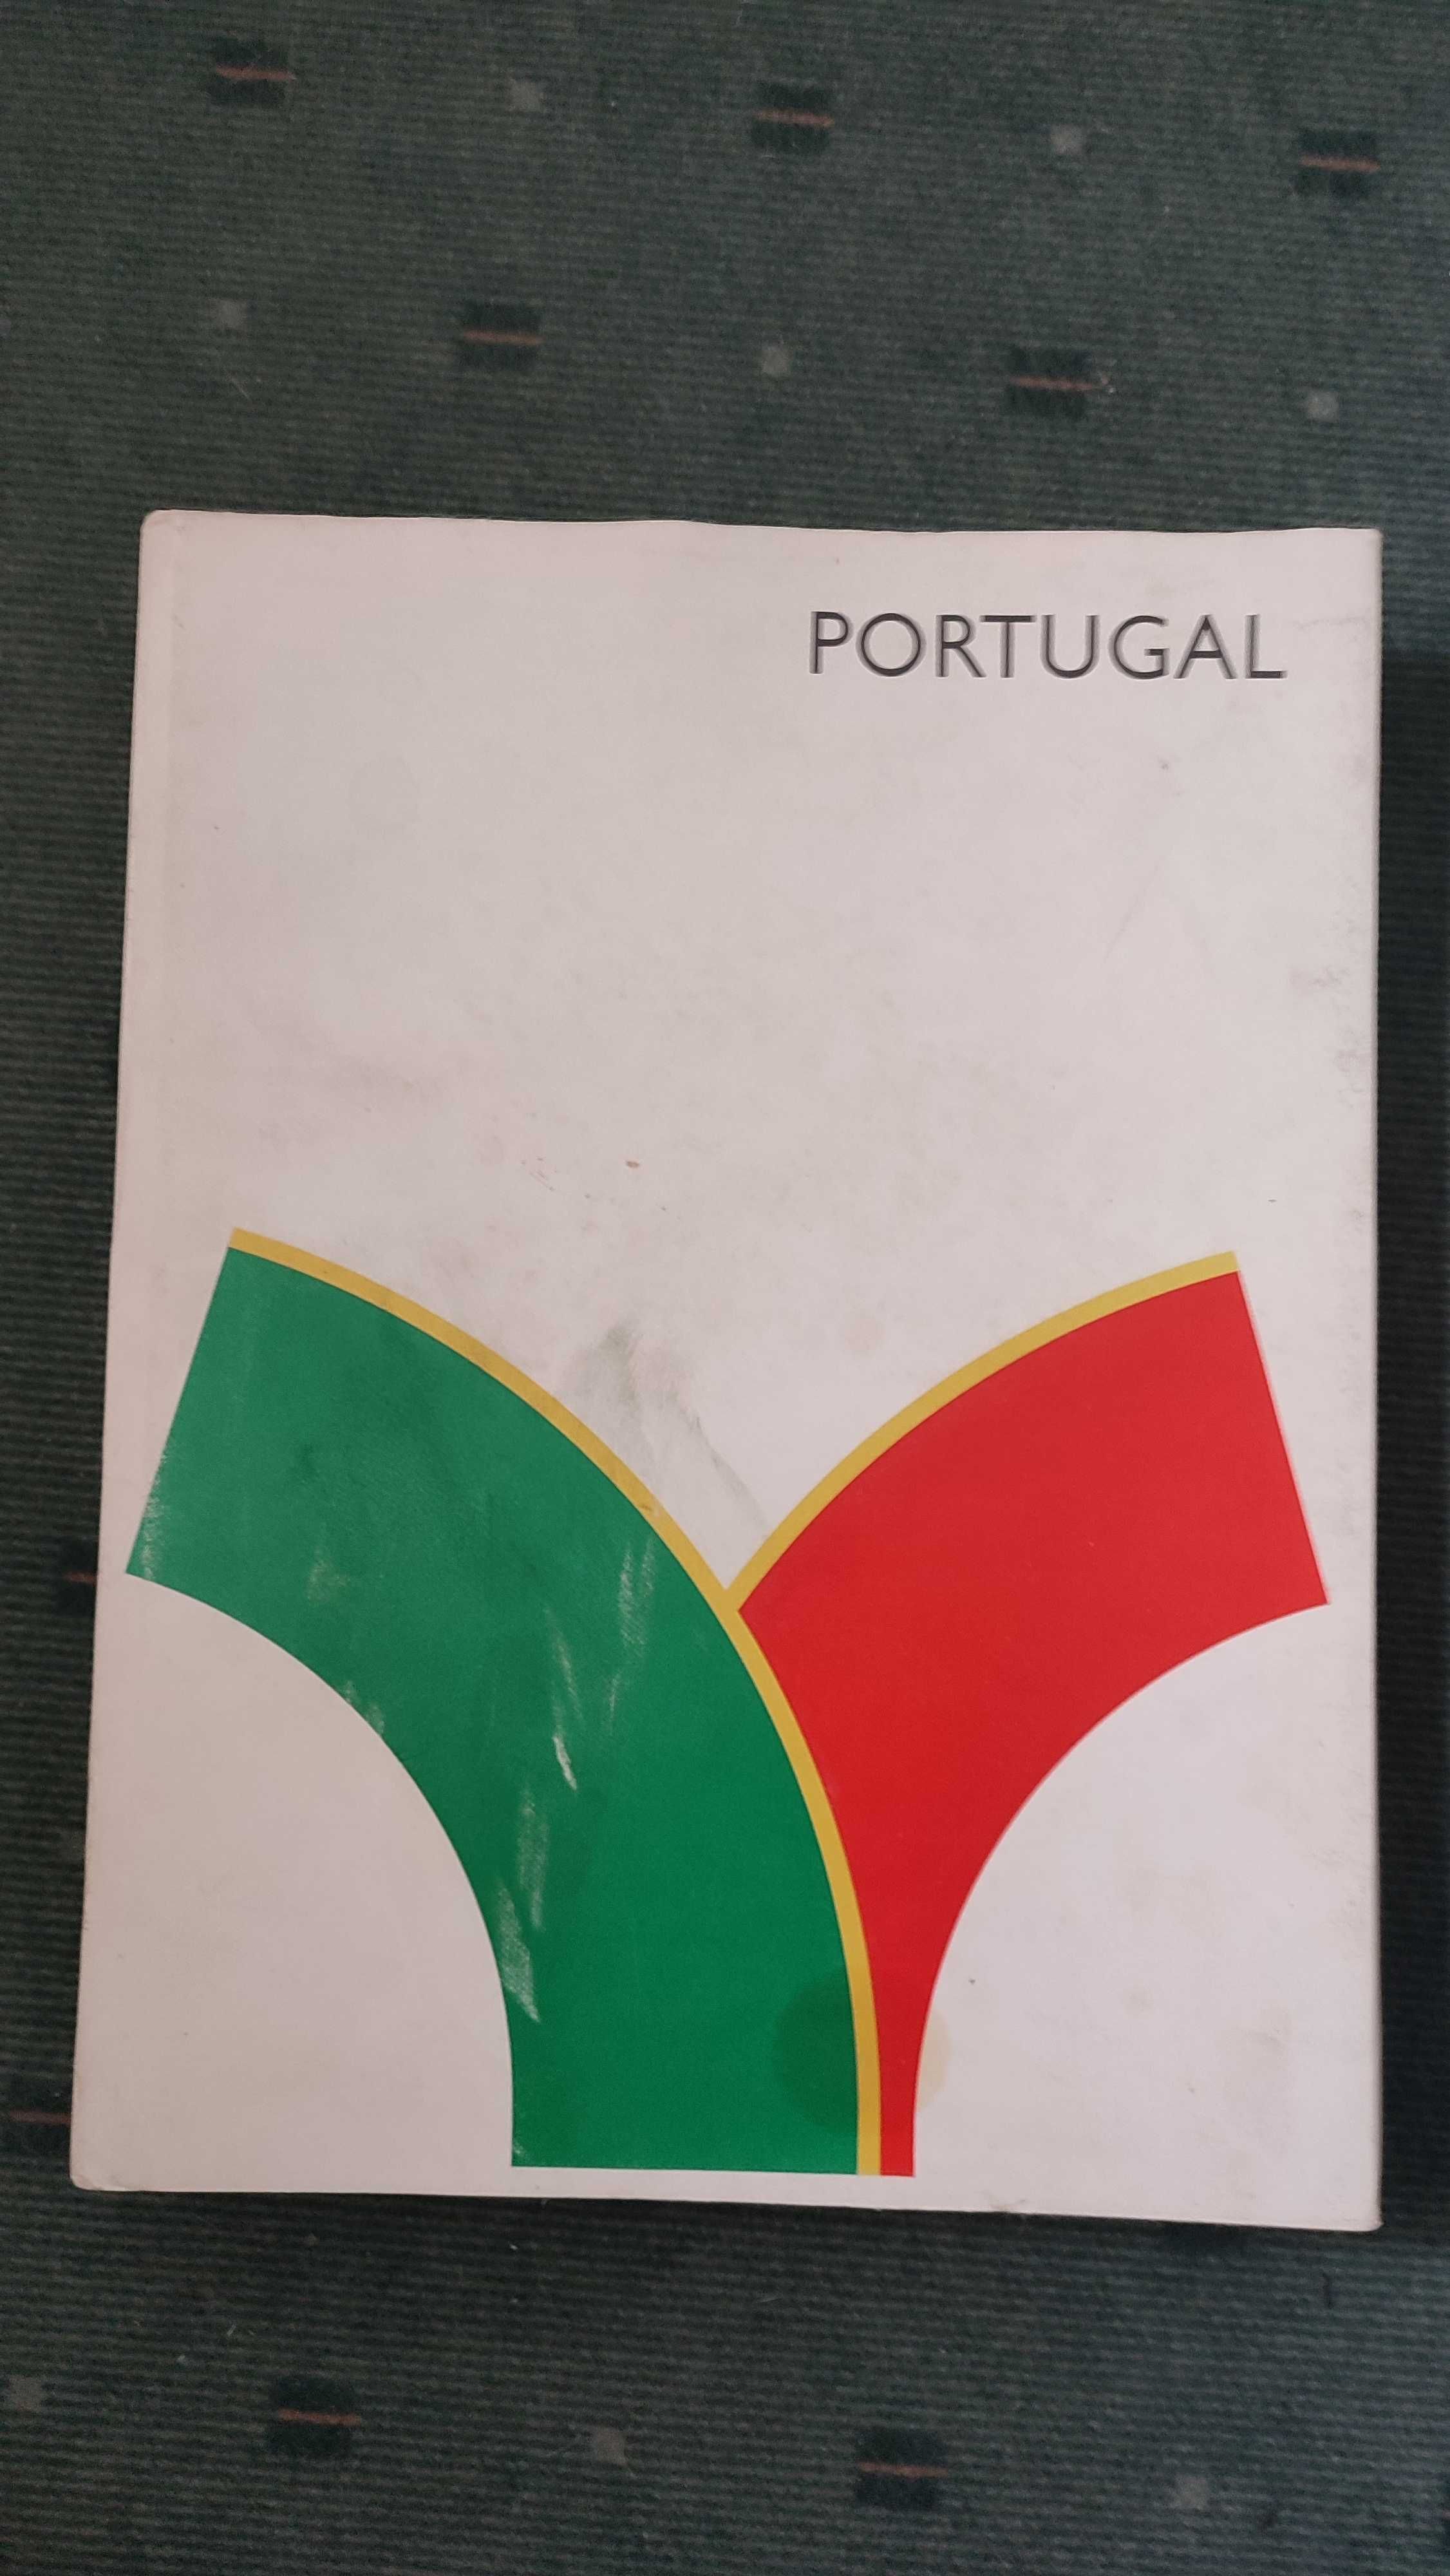 Portugal Um País que importa conhecer - Edições panorama, 1972